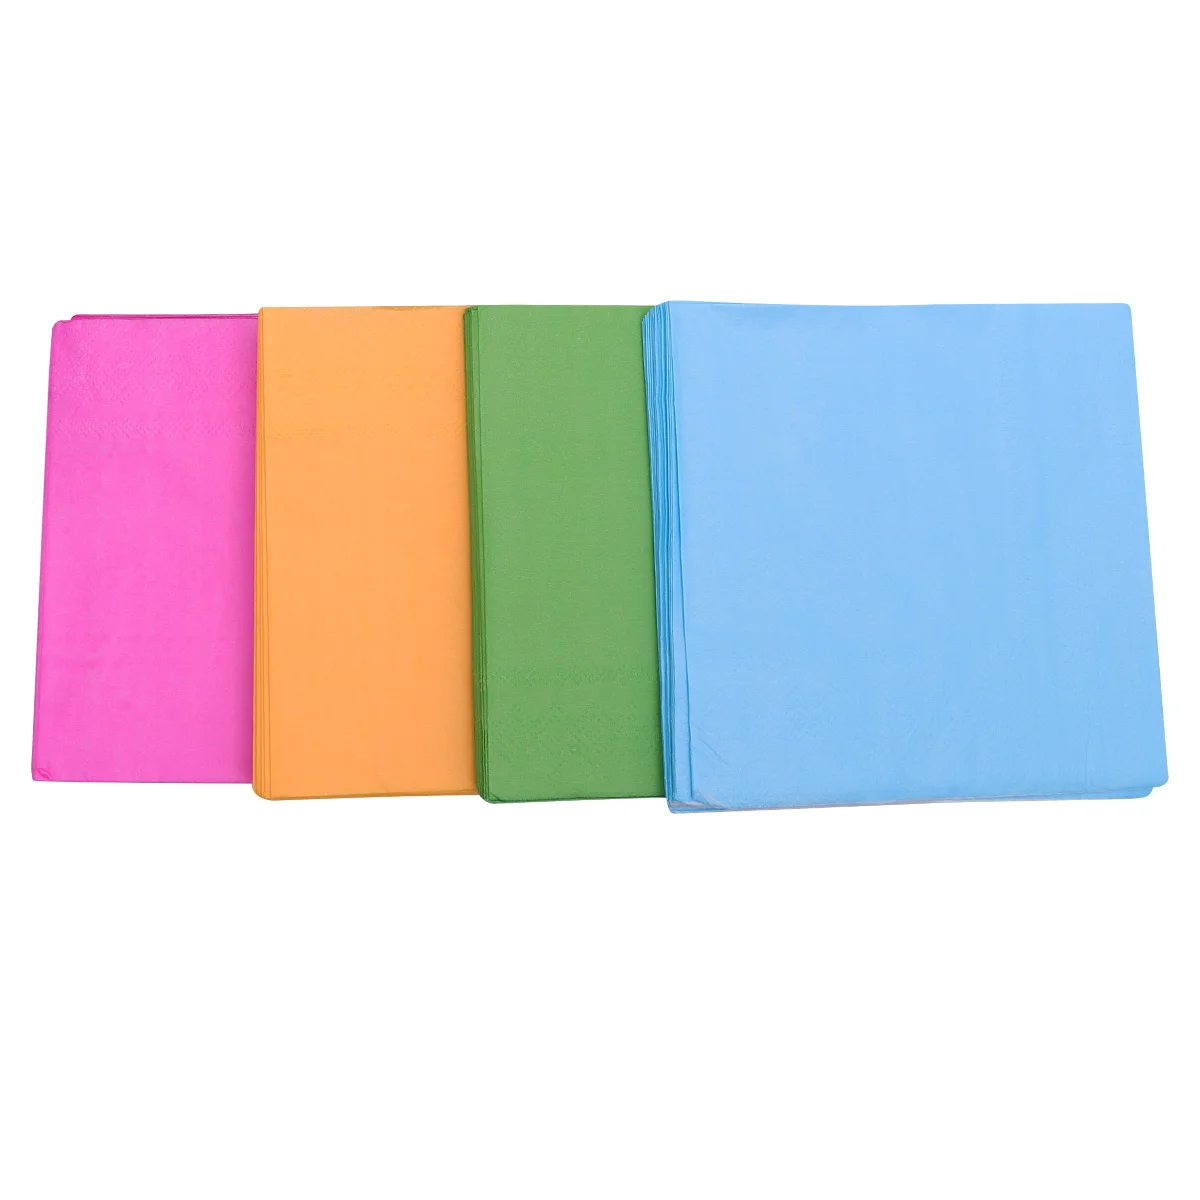 

80 Pcs Solid Color Tissue Paper Handkerchief Napkin Towels Pure Serviette Colored Napkins Disposable